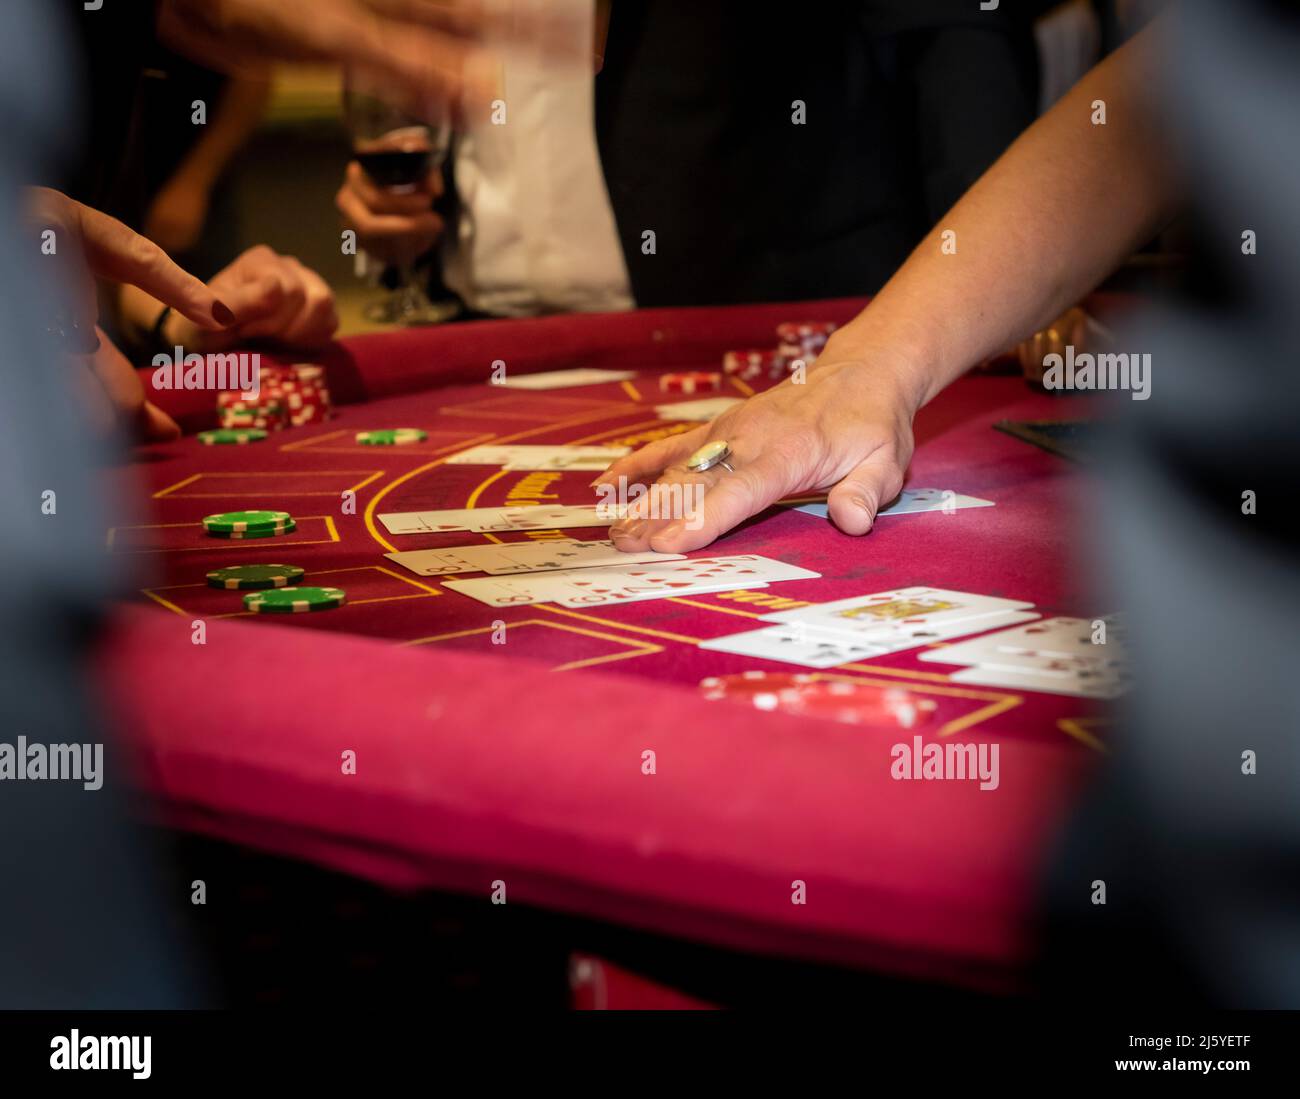 Kaukasische weibliche Hand, die Karten auf einem runden roten Casino-Tisch ausgibt. Stockfoto